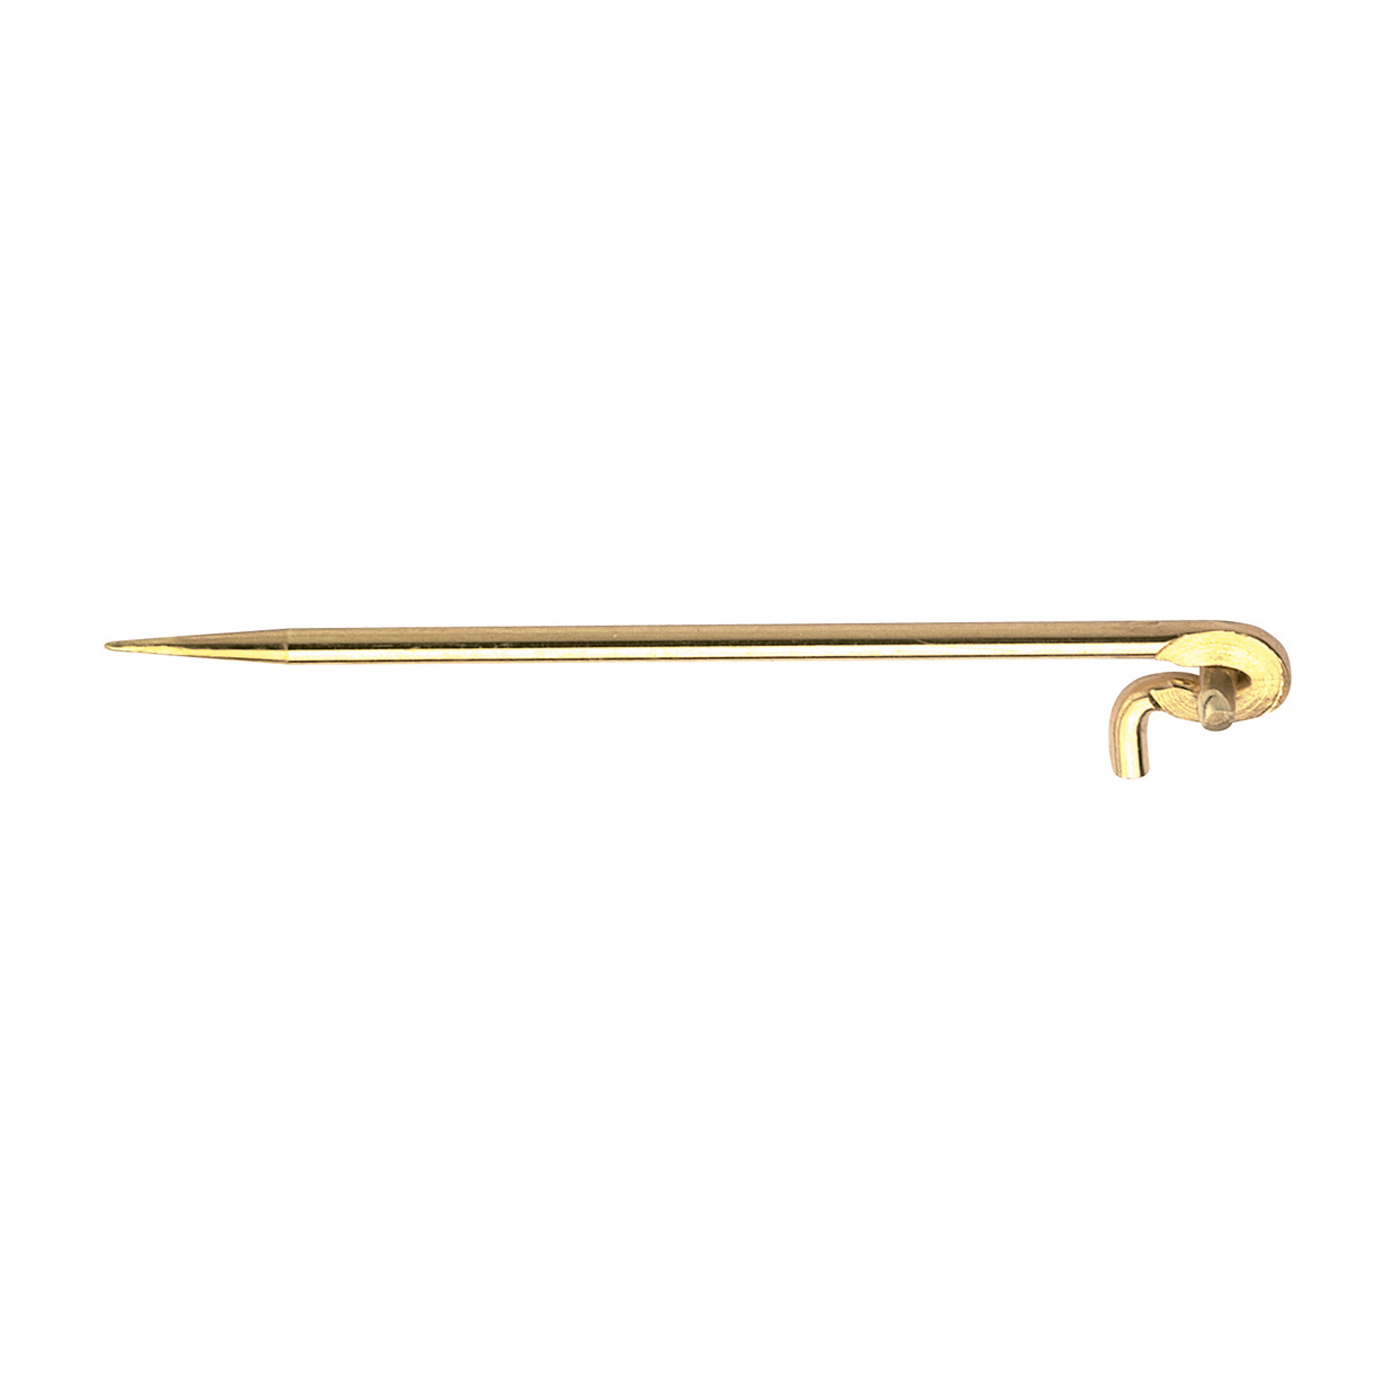 Brooch Needle, 585G, 30 mm - 1 piece